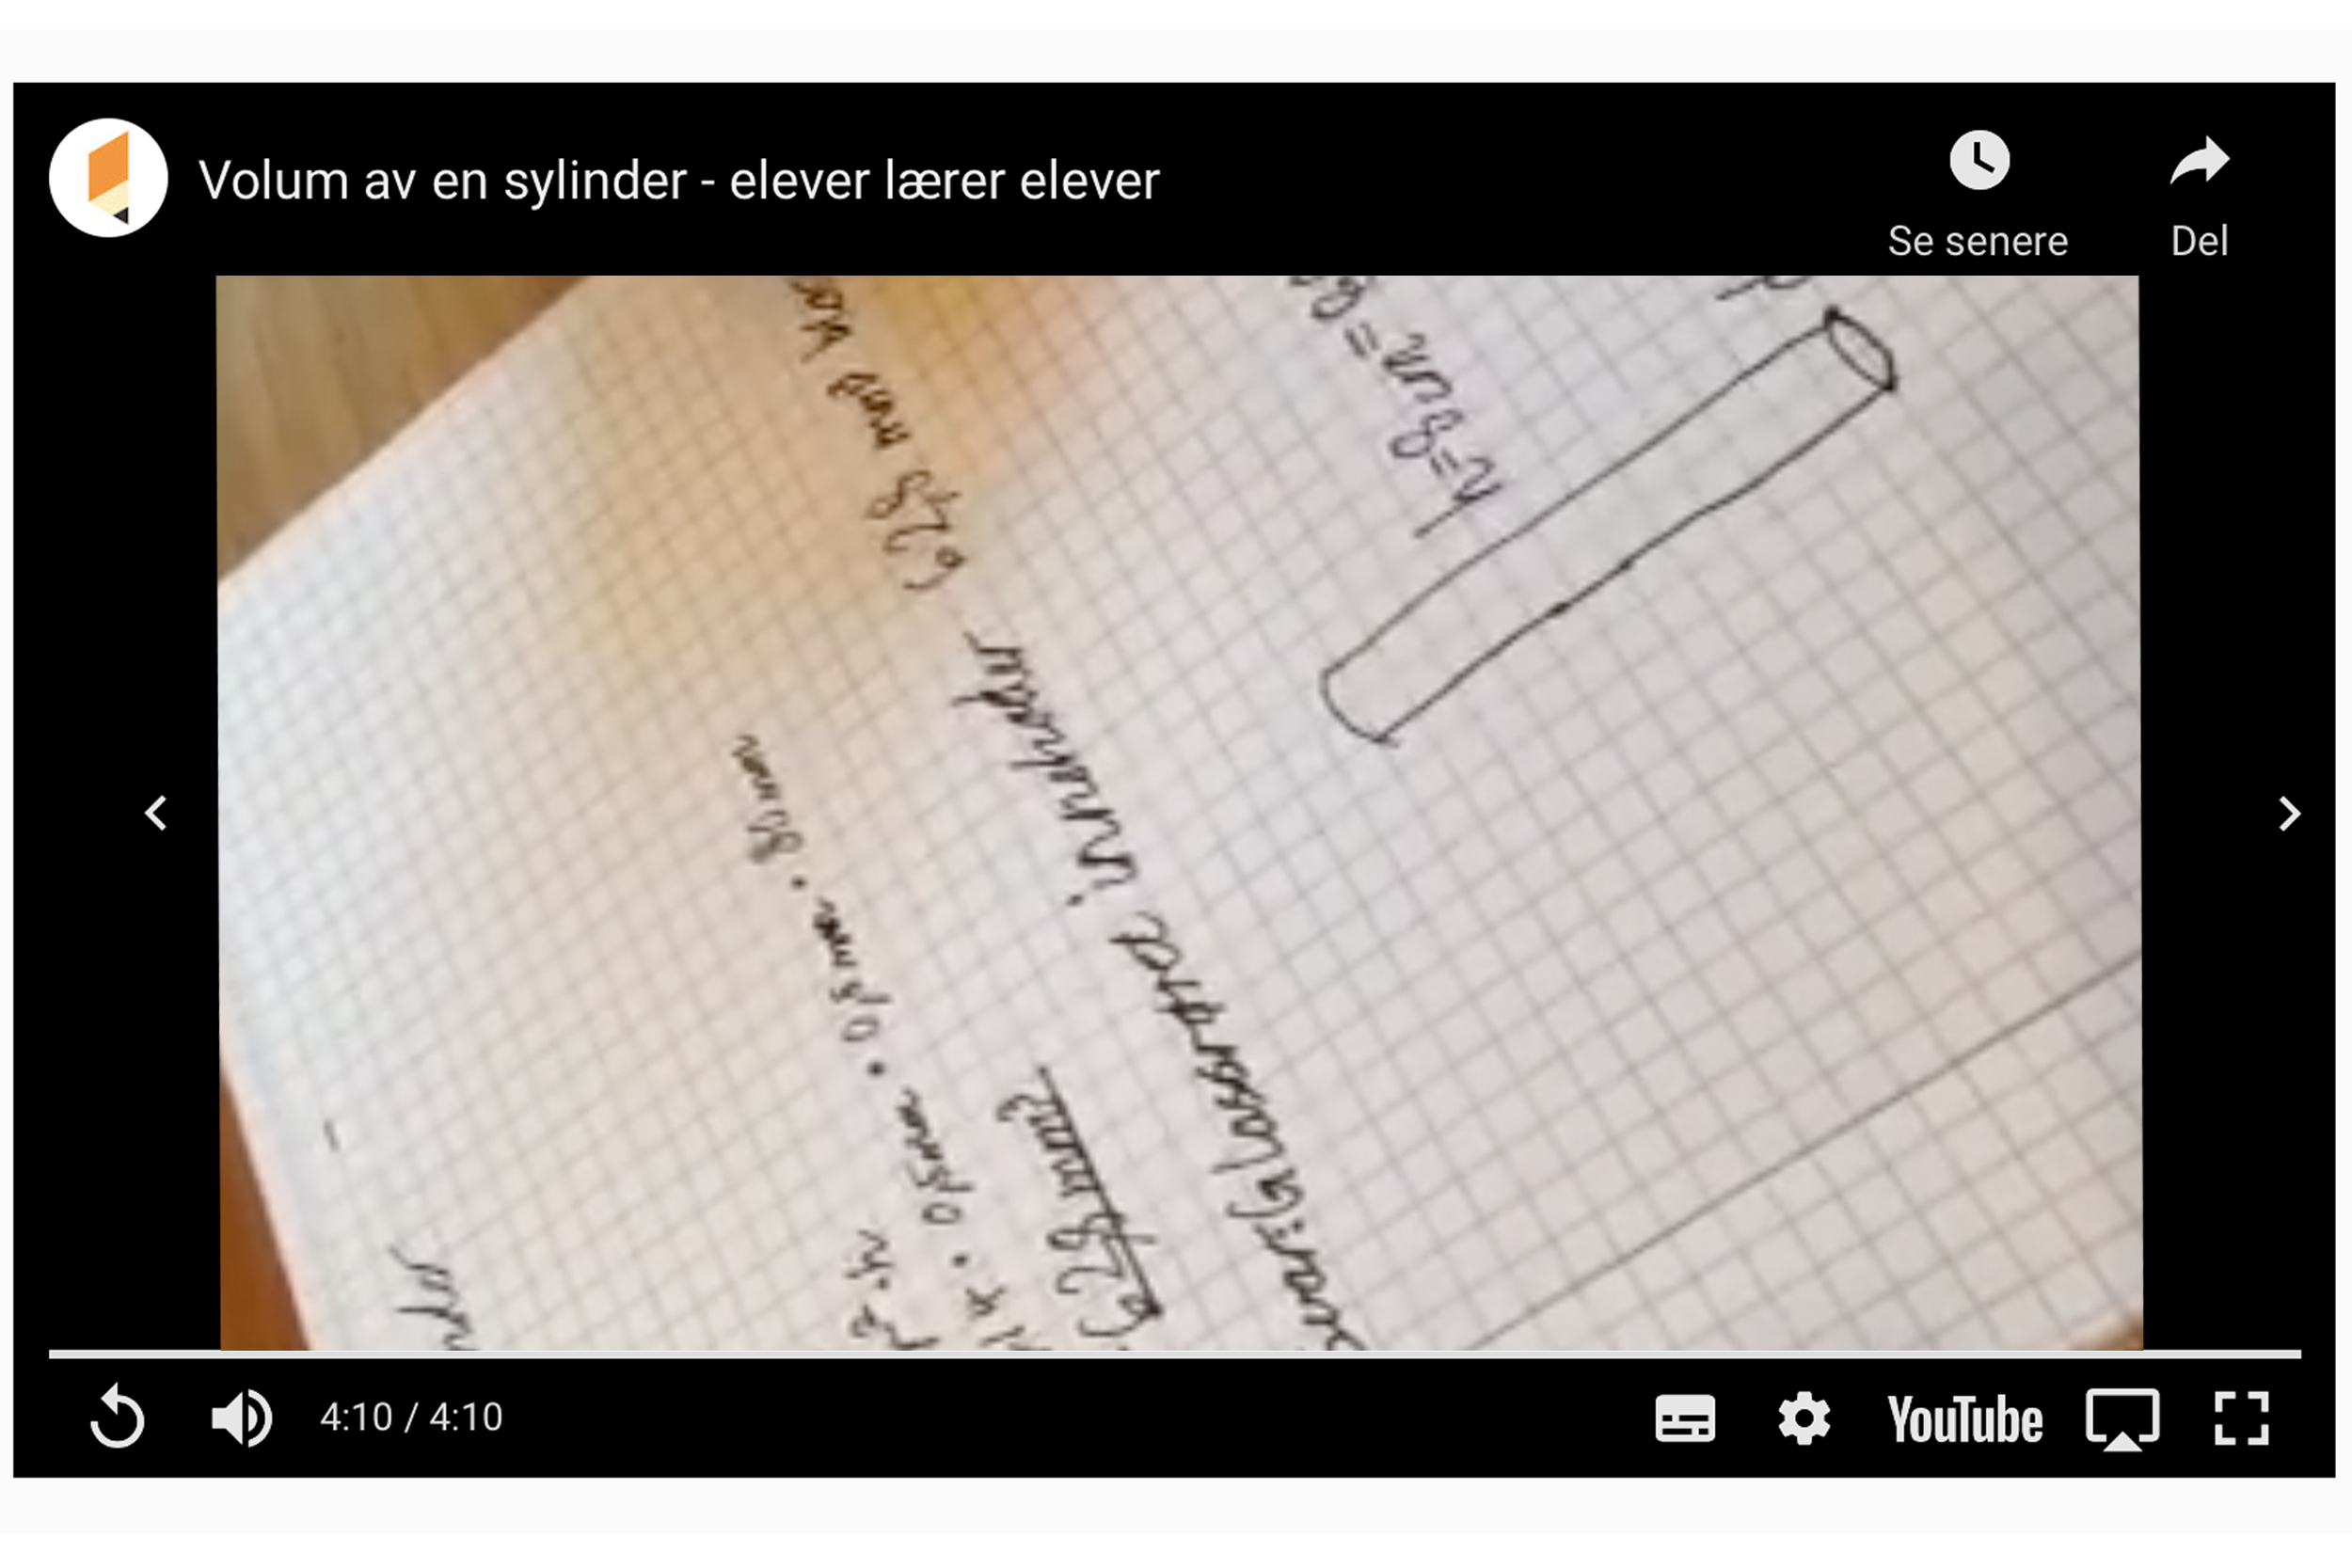 Skjermdump fra filmen «Volum av en sylinder - elever lærer elever»